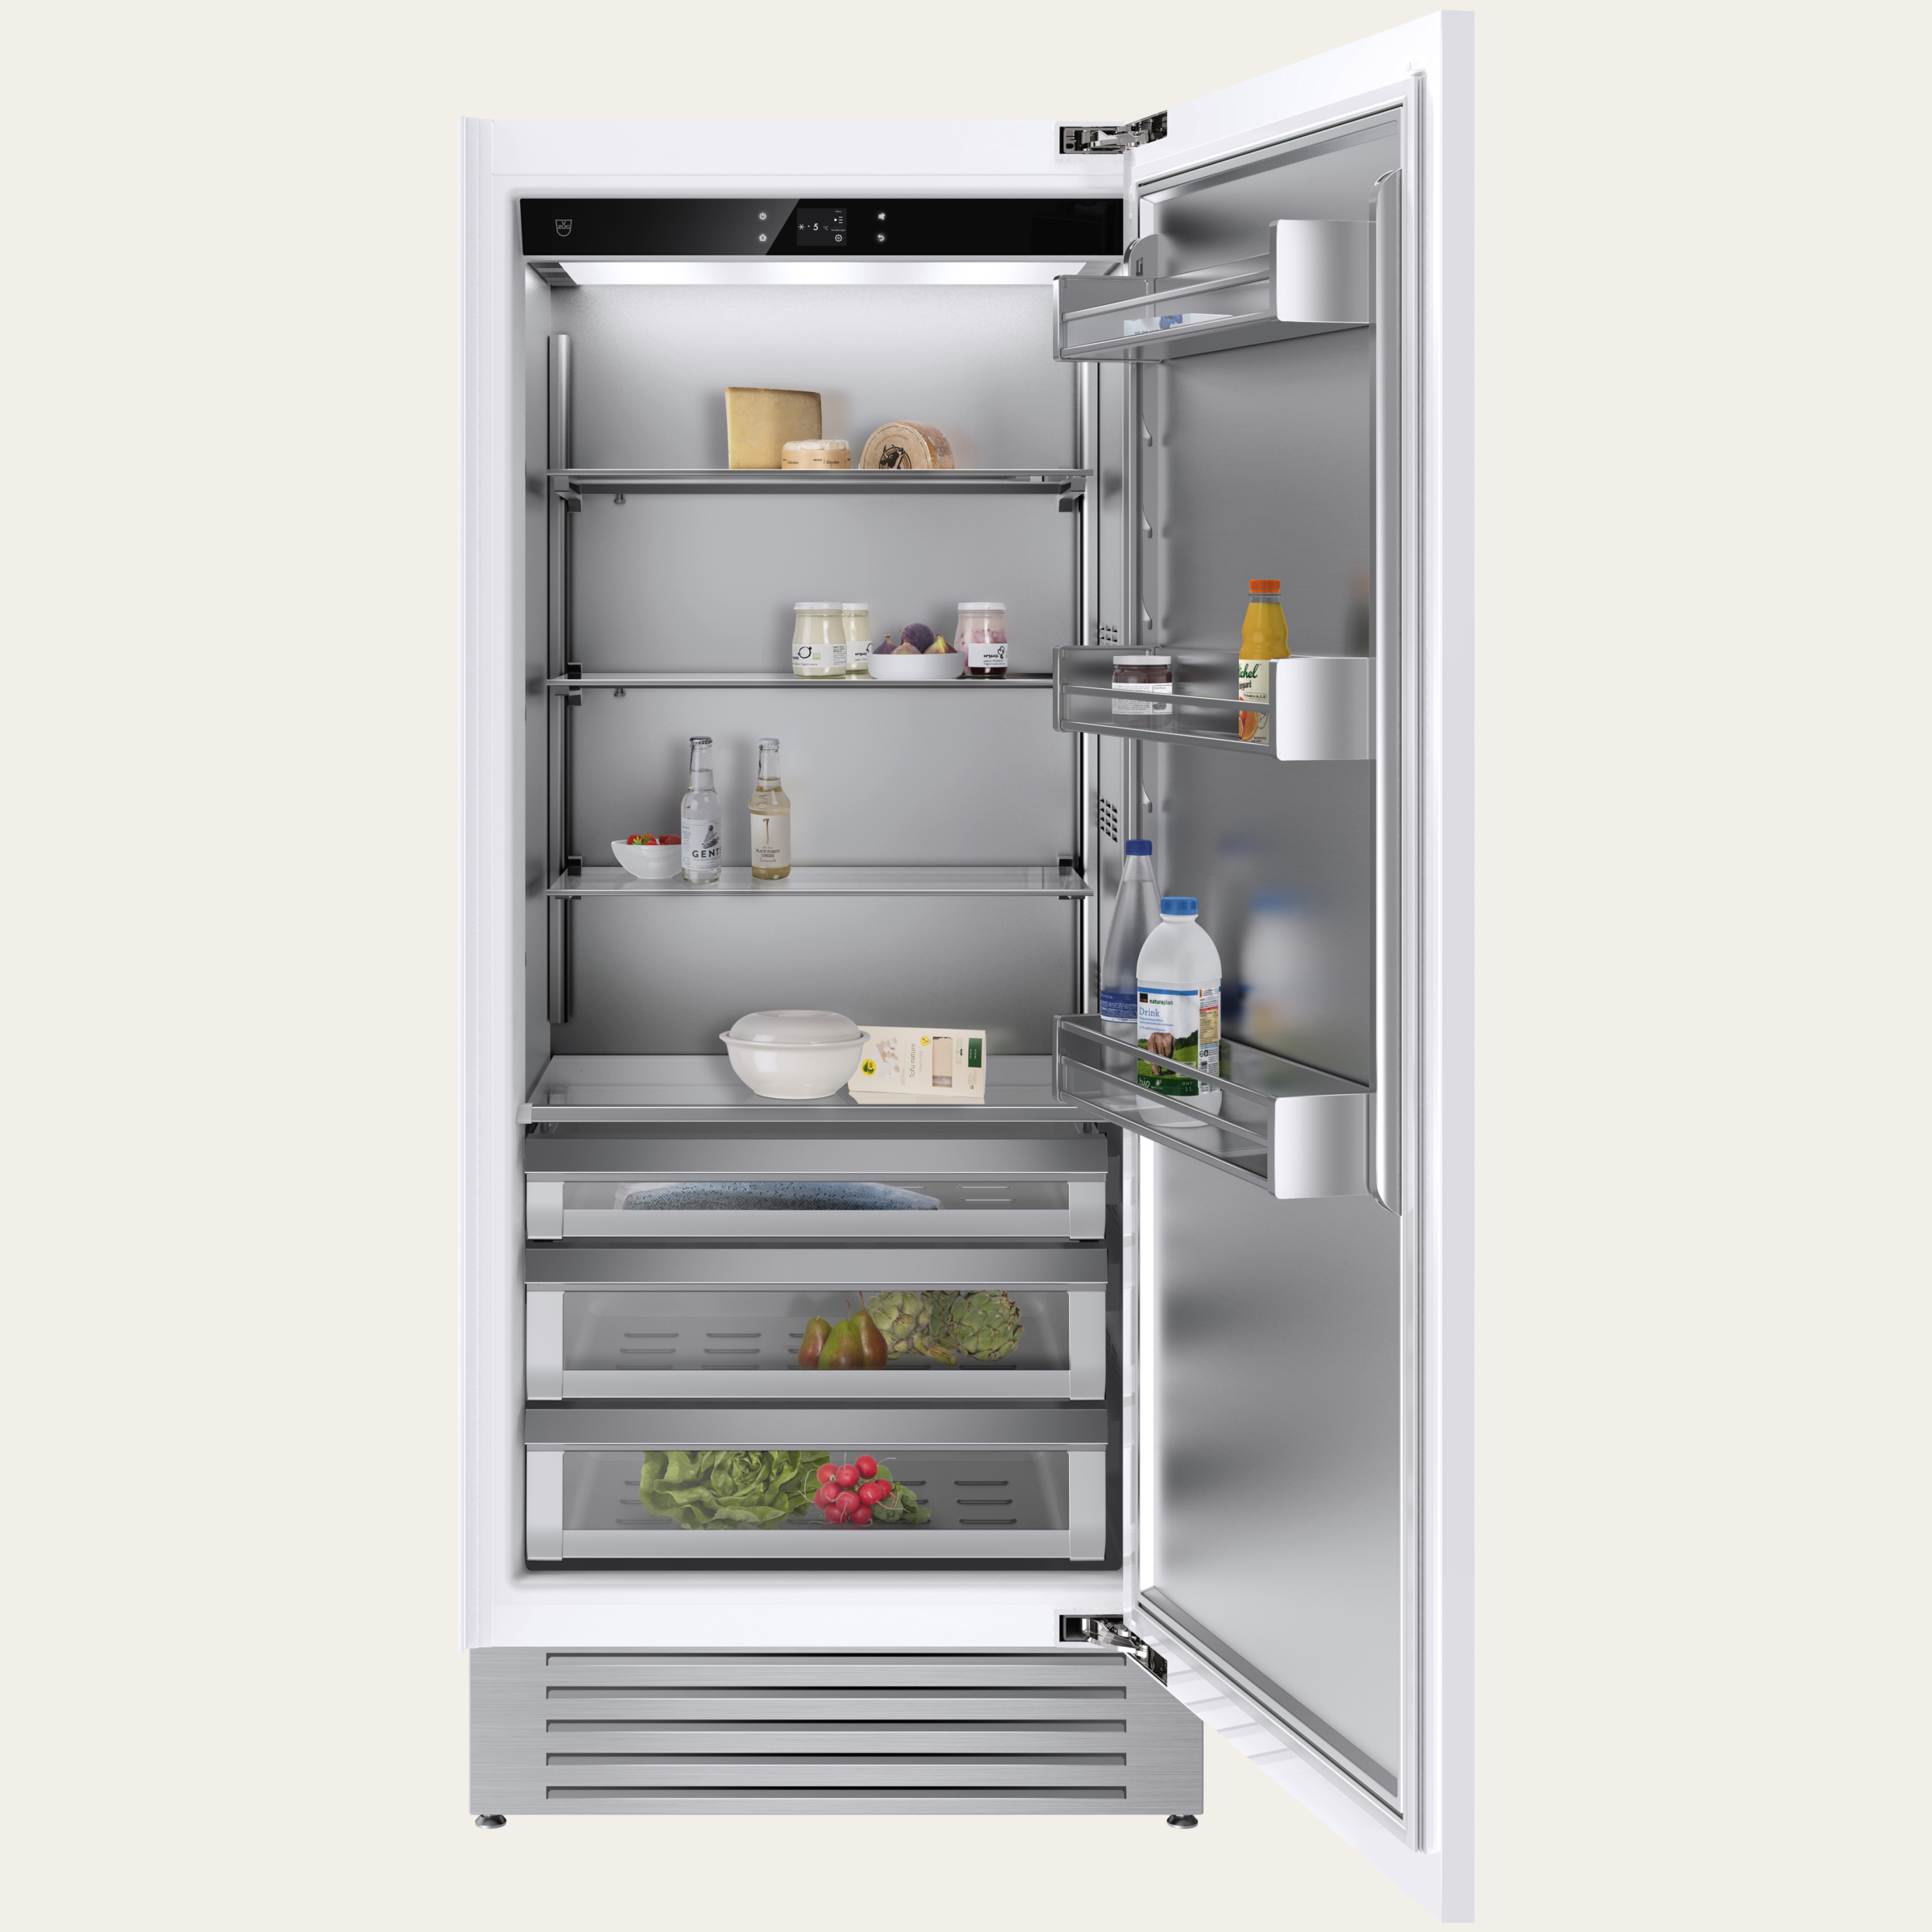 V-ZUG Refrigerator/freezer Cooler V6000 Supreme, Standard width: 90 cm, Standard height: 205 cm, Fully integratable, Door hinge: Right, TouchControl